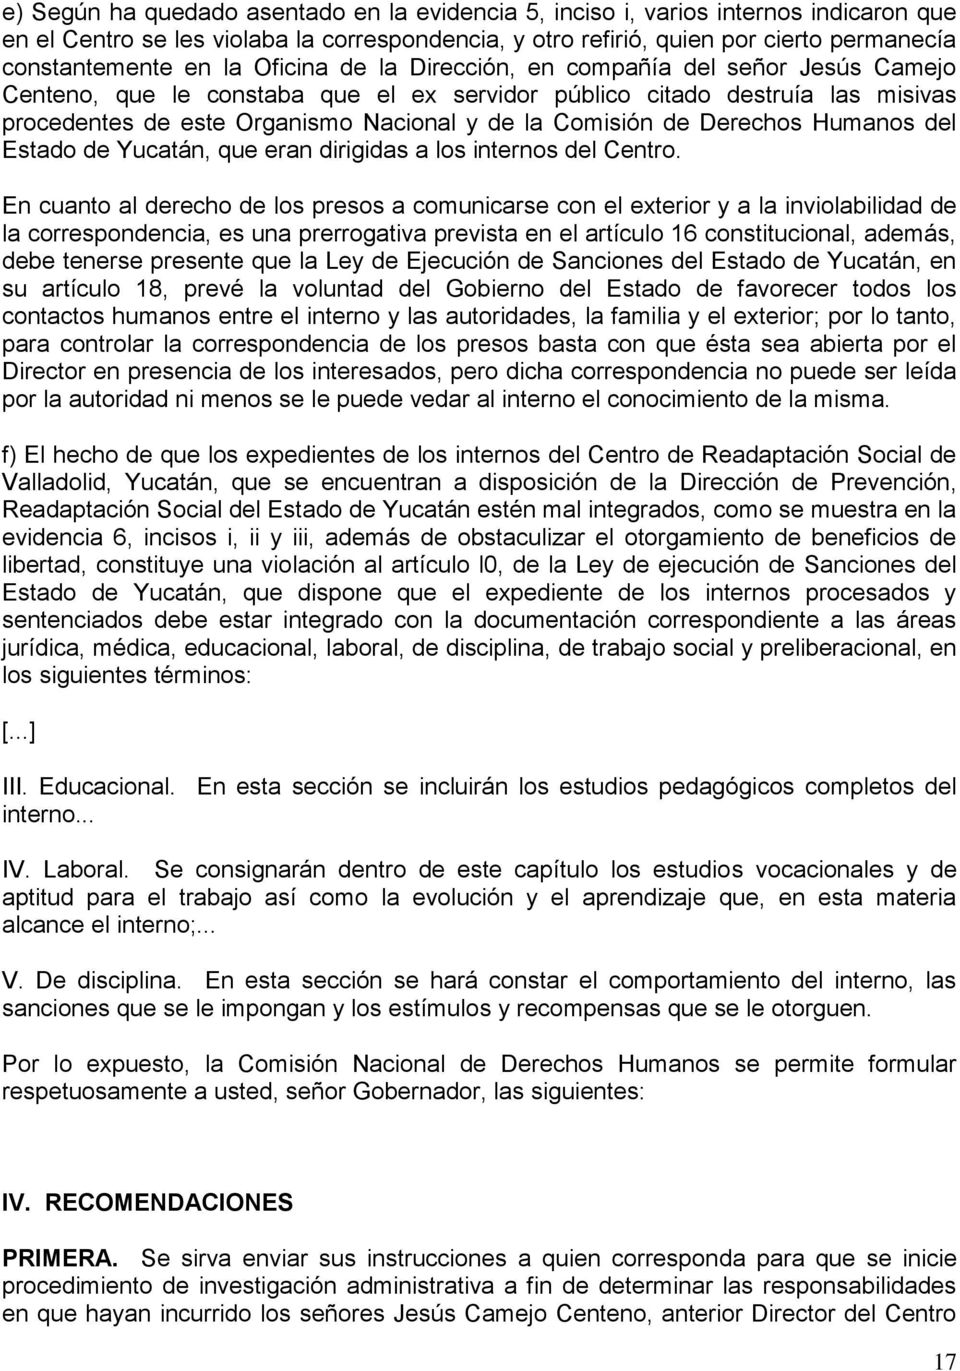 de Derechos Humanos del Estado de Yucatán, que eran dirigidas a los internos del Centro.